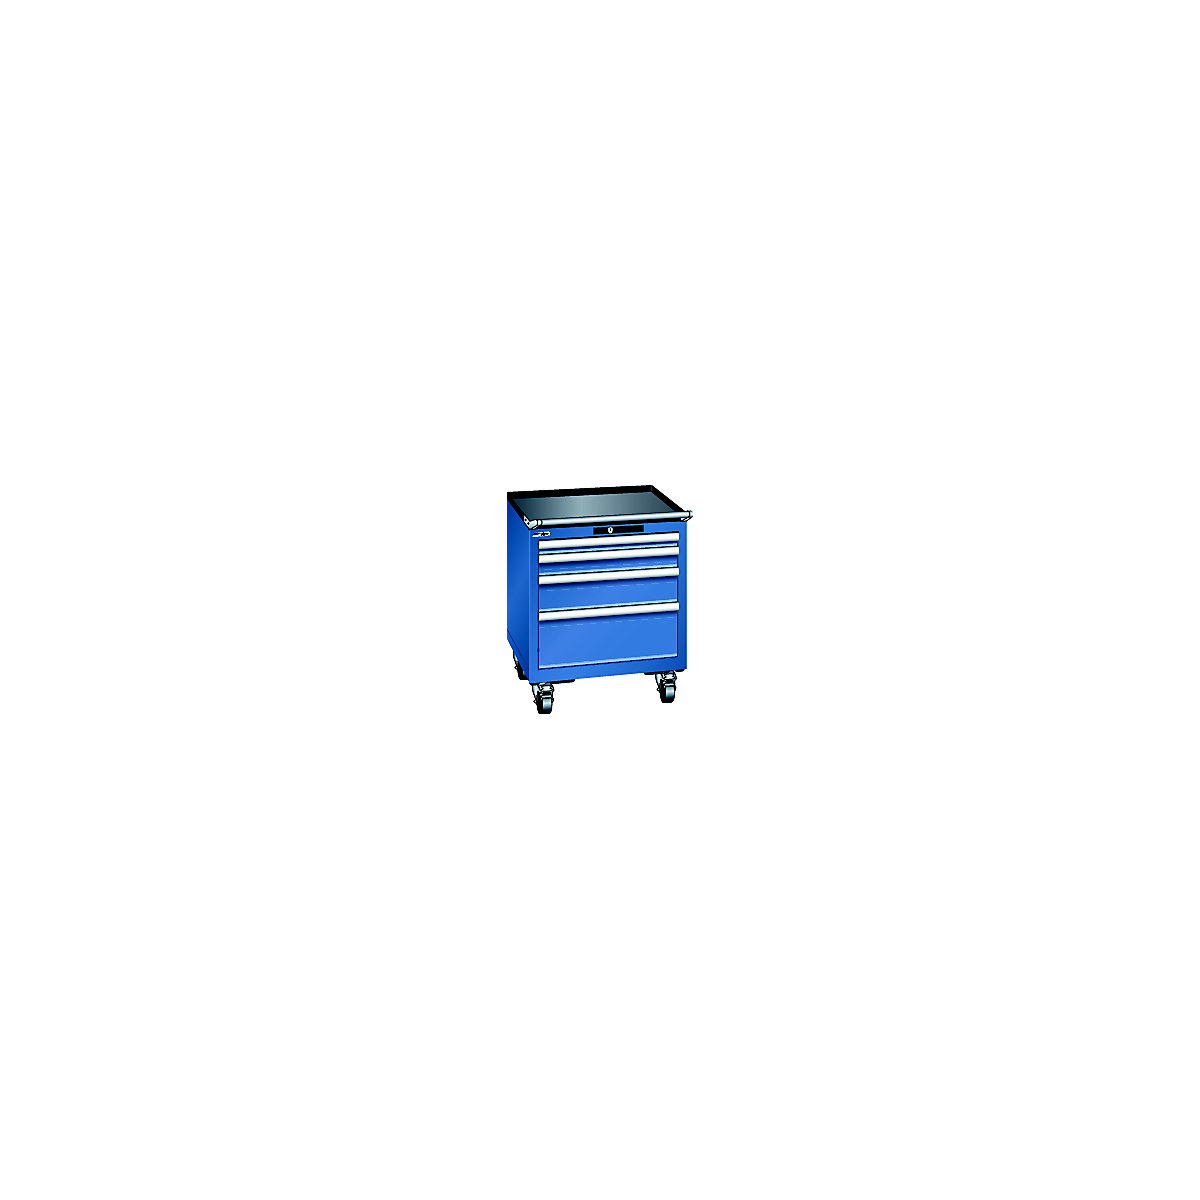 LISTA – Ladičar, pomičan, ŠxD 564 x 572 mm, 4 ladice, u encijan plavoj boji